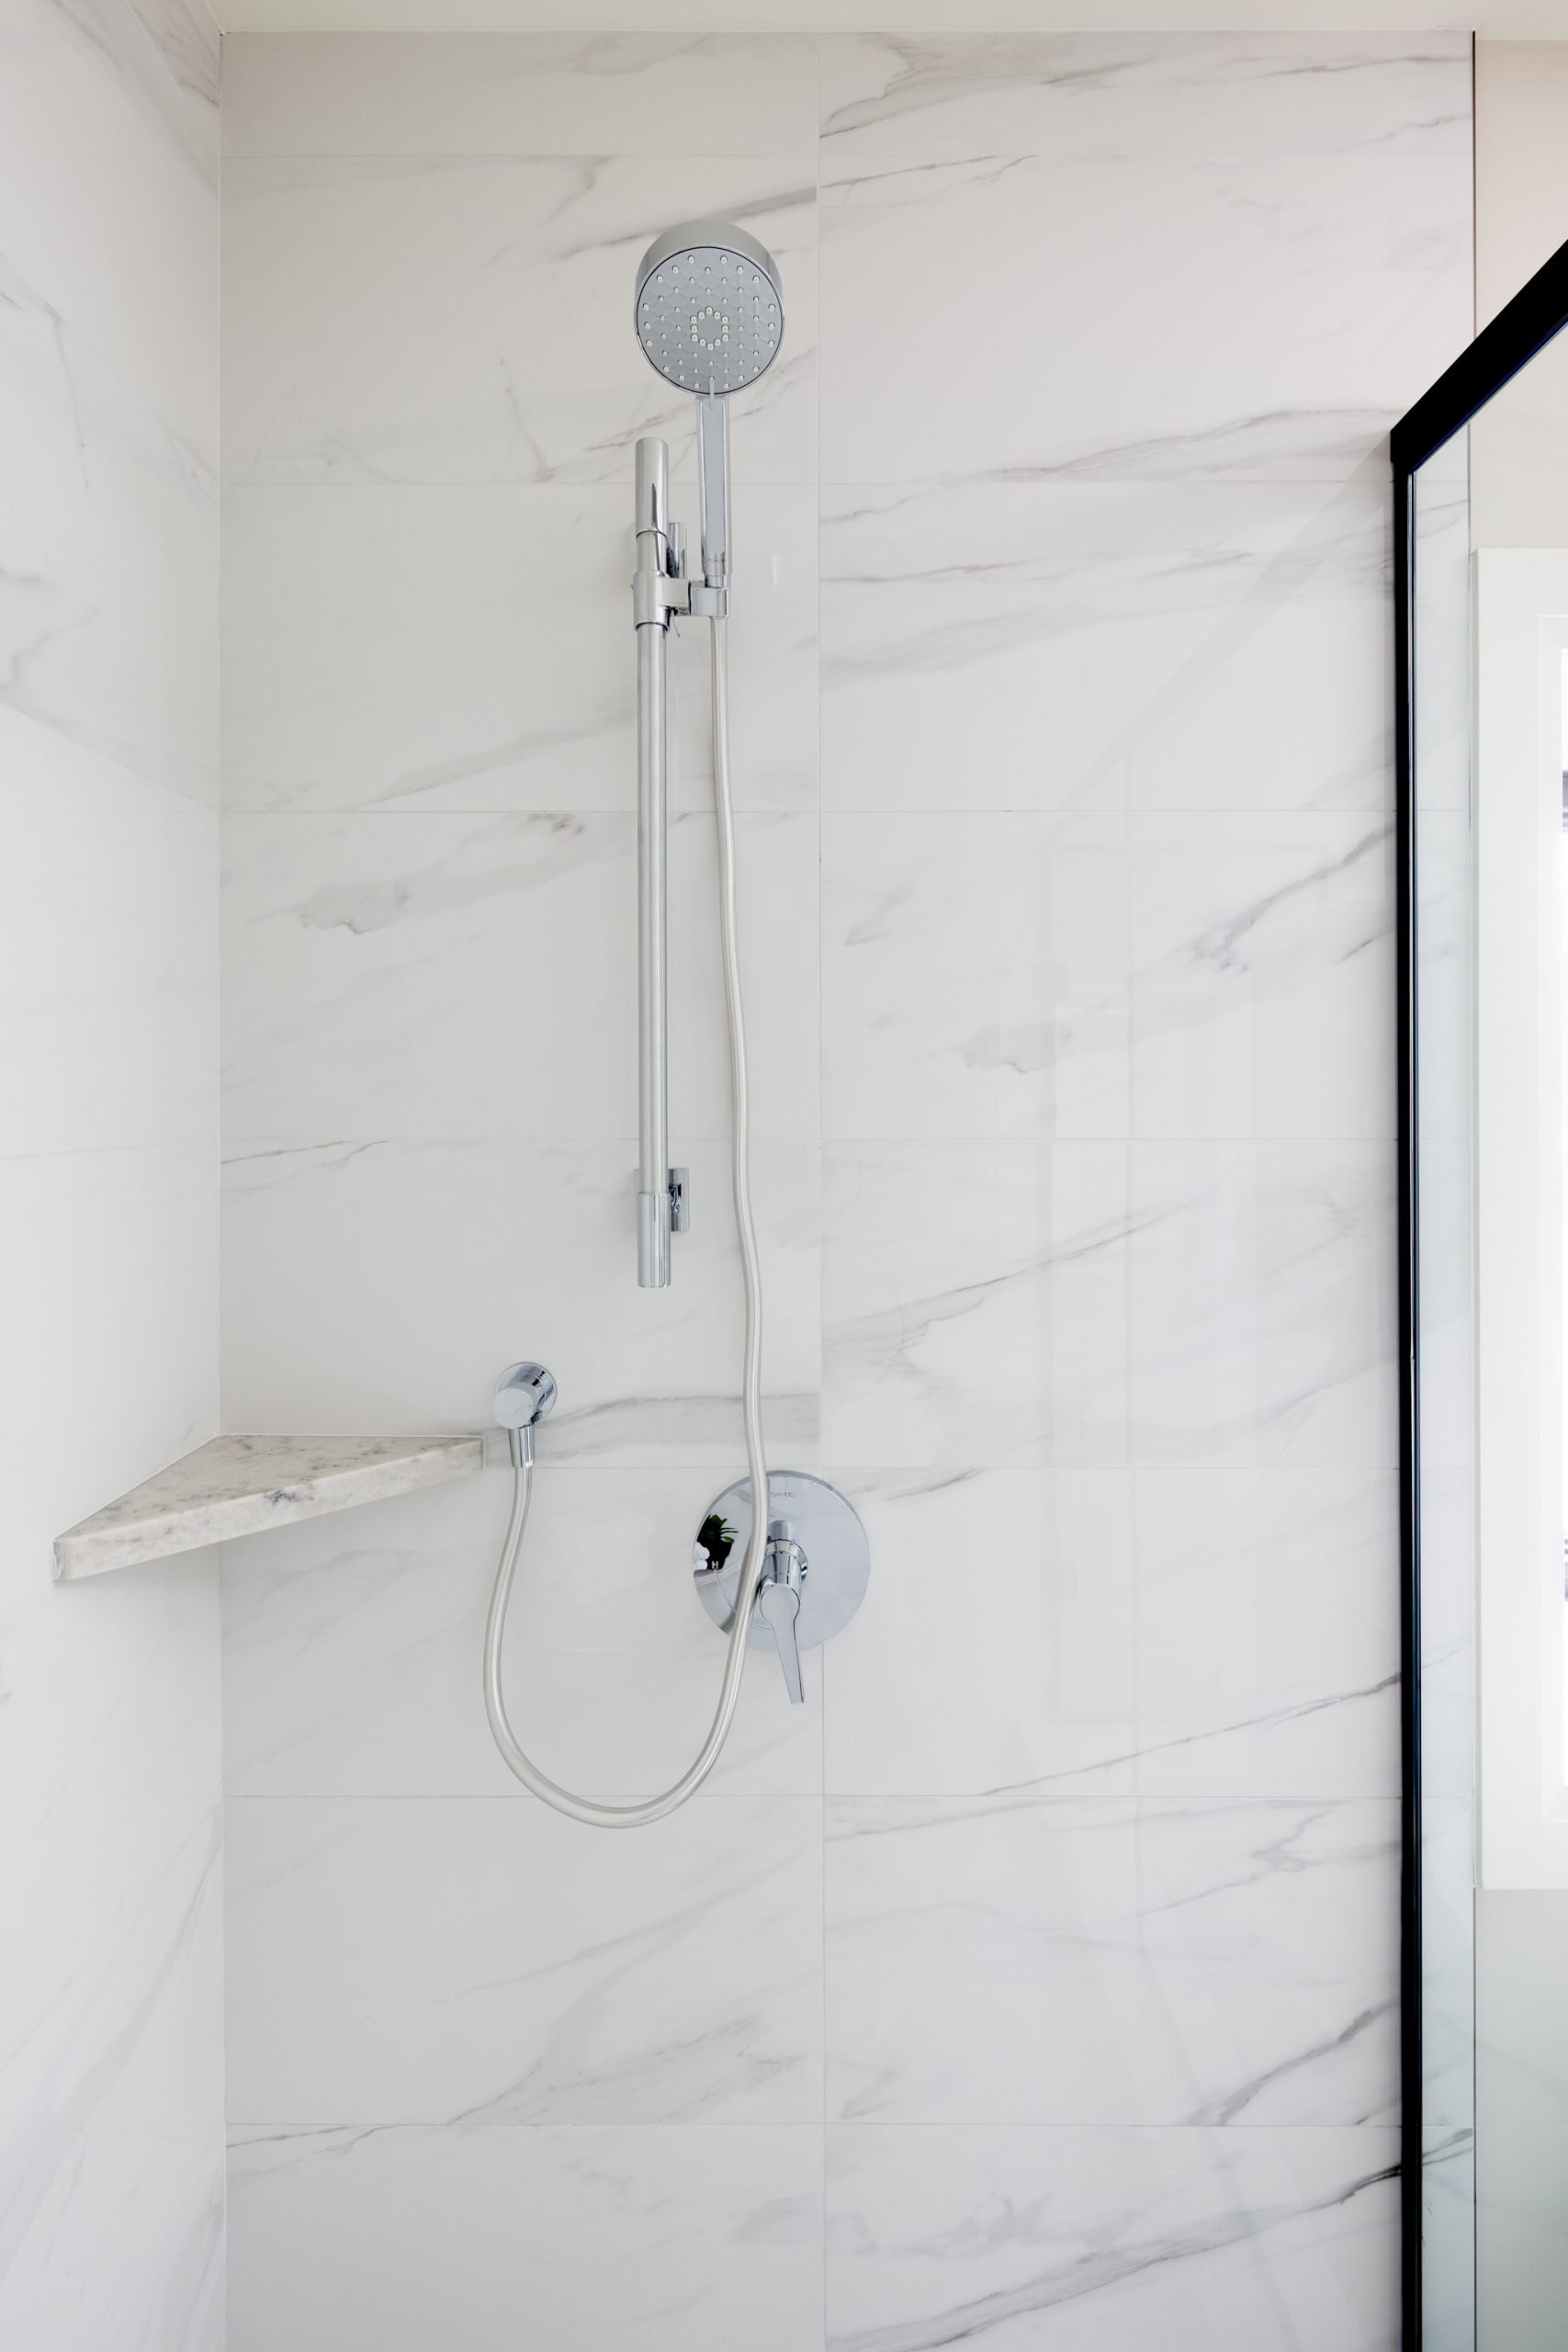 stainless steel shower head in marble tiled custom shower